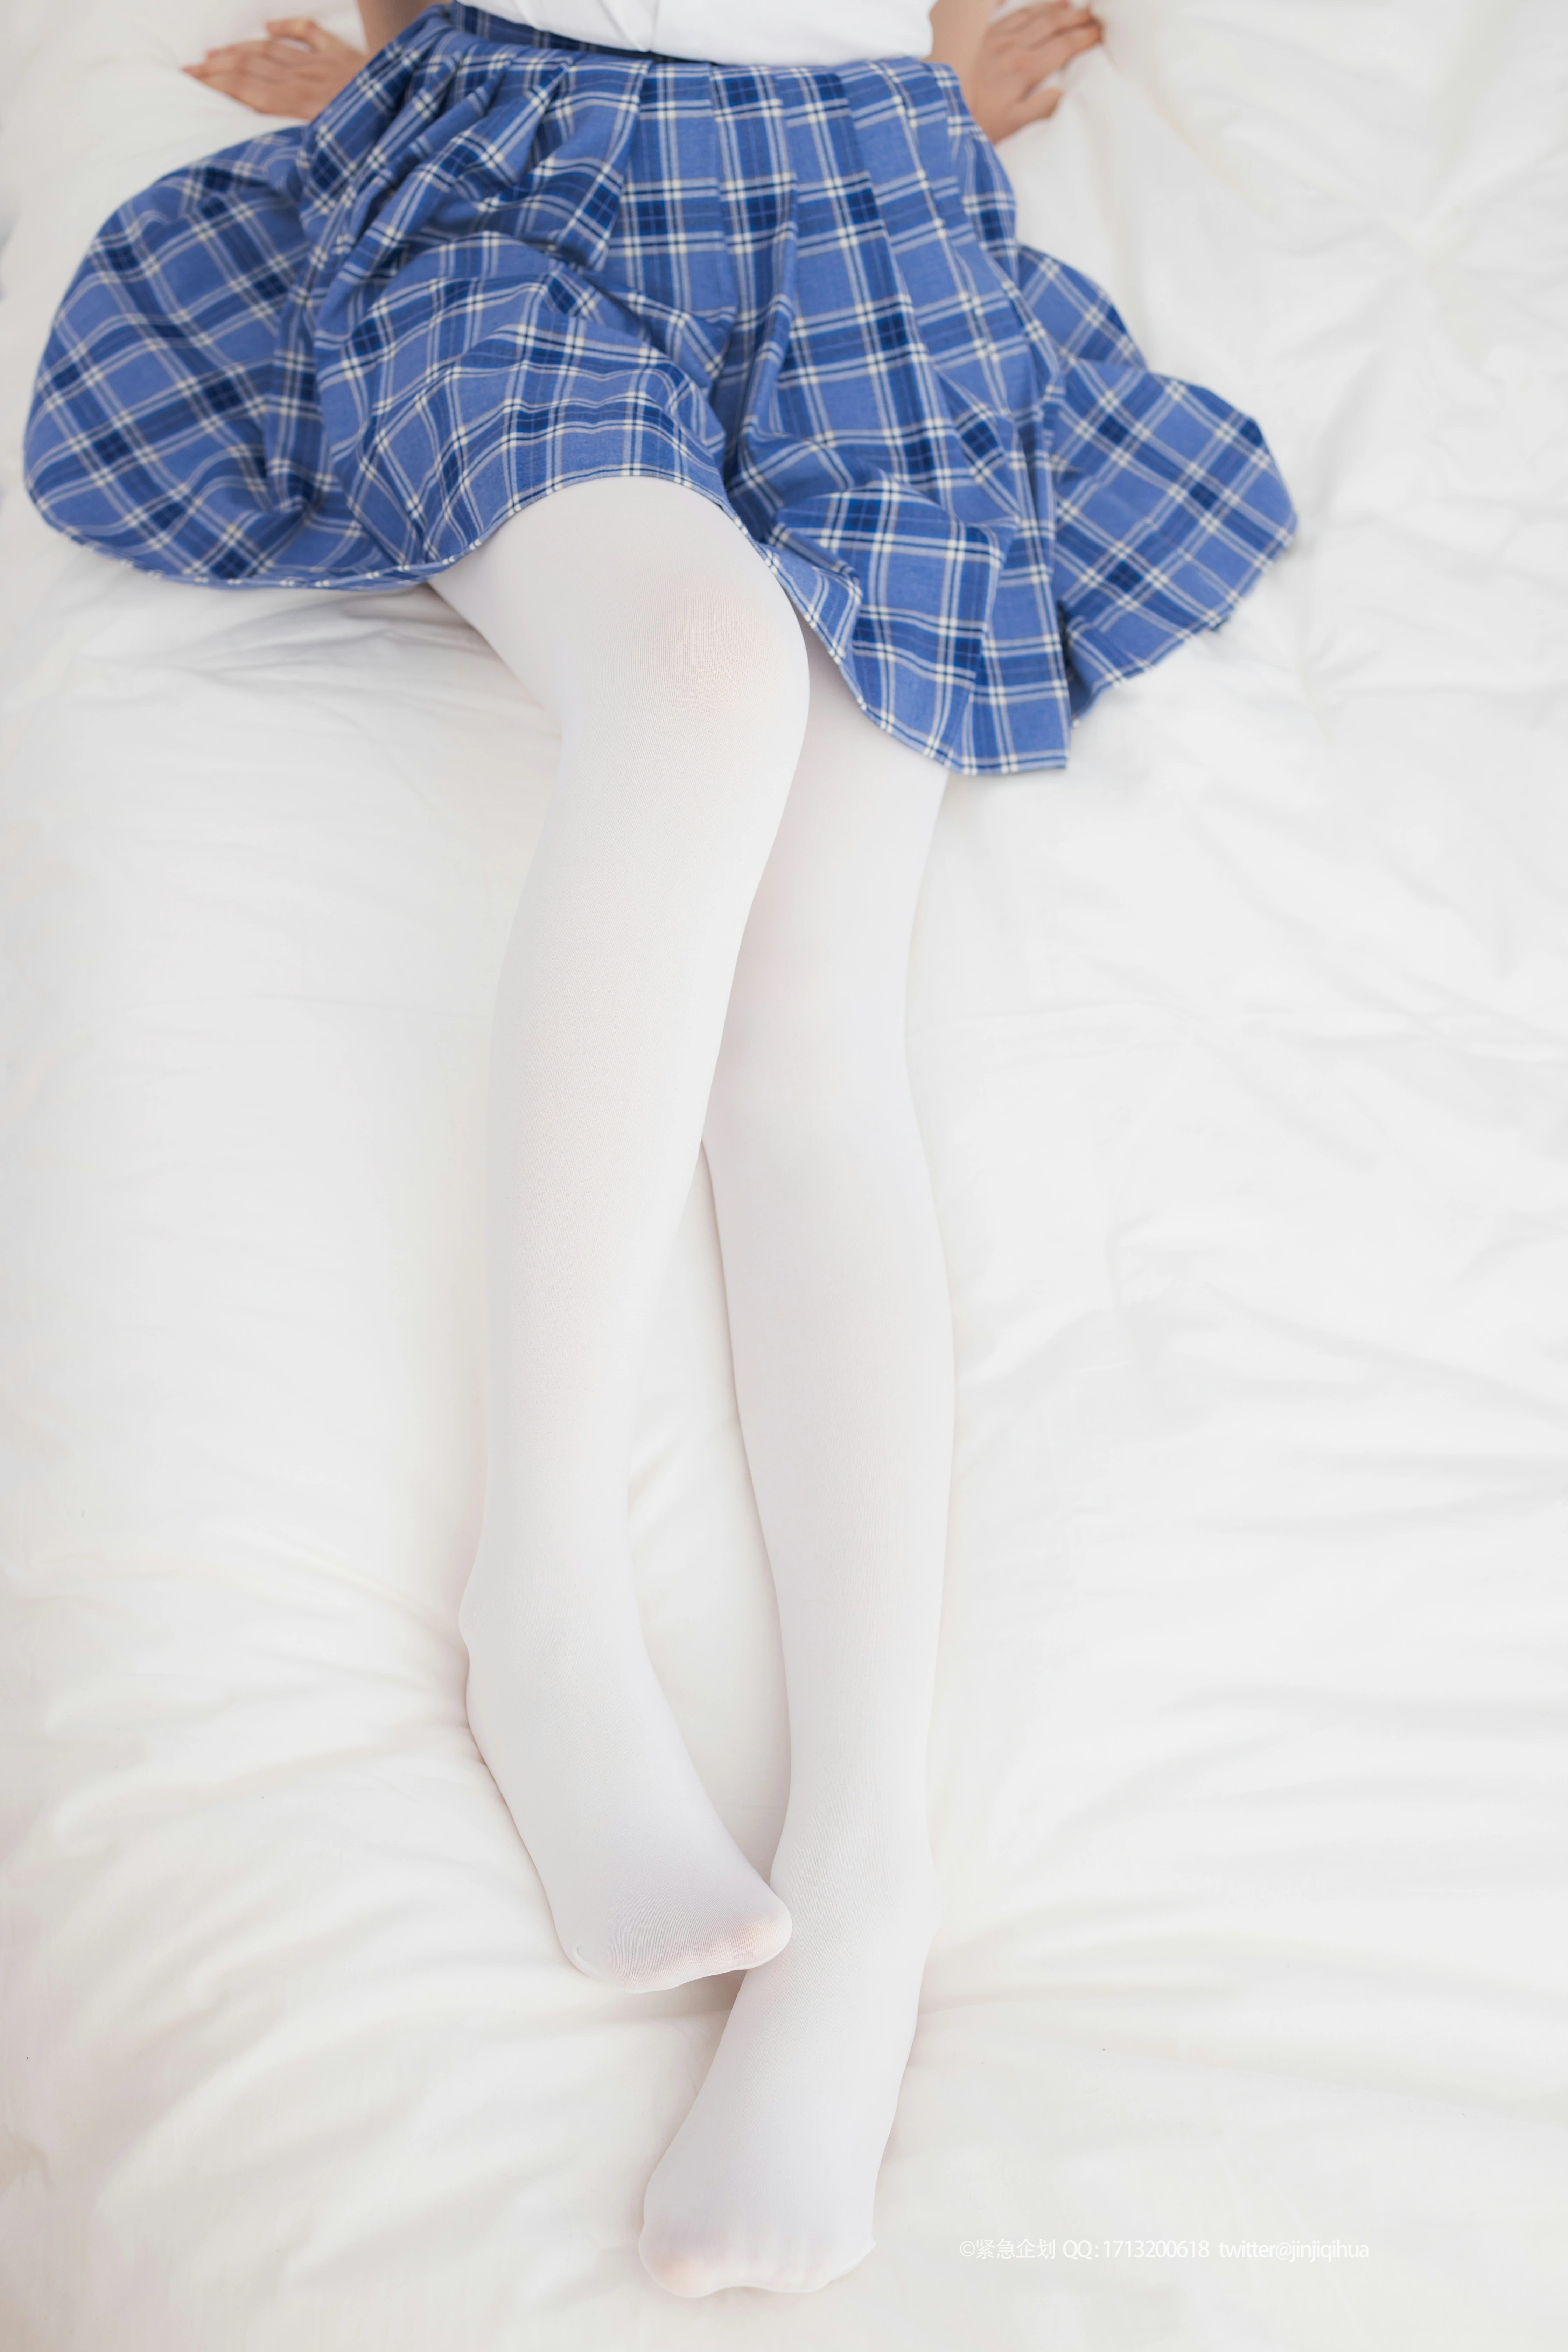 [紧急企划]Q-002 清纯萝莉小学妹 白色JK制服与蓝色短裙加白色丝袜美腿性感私房写真集,